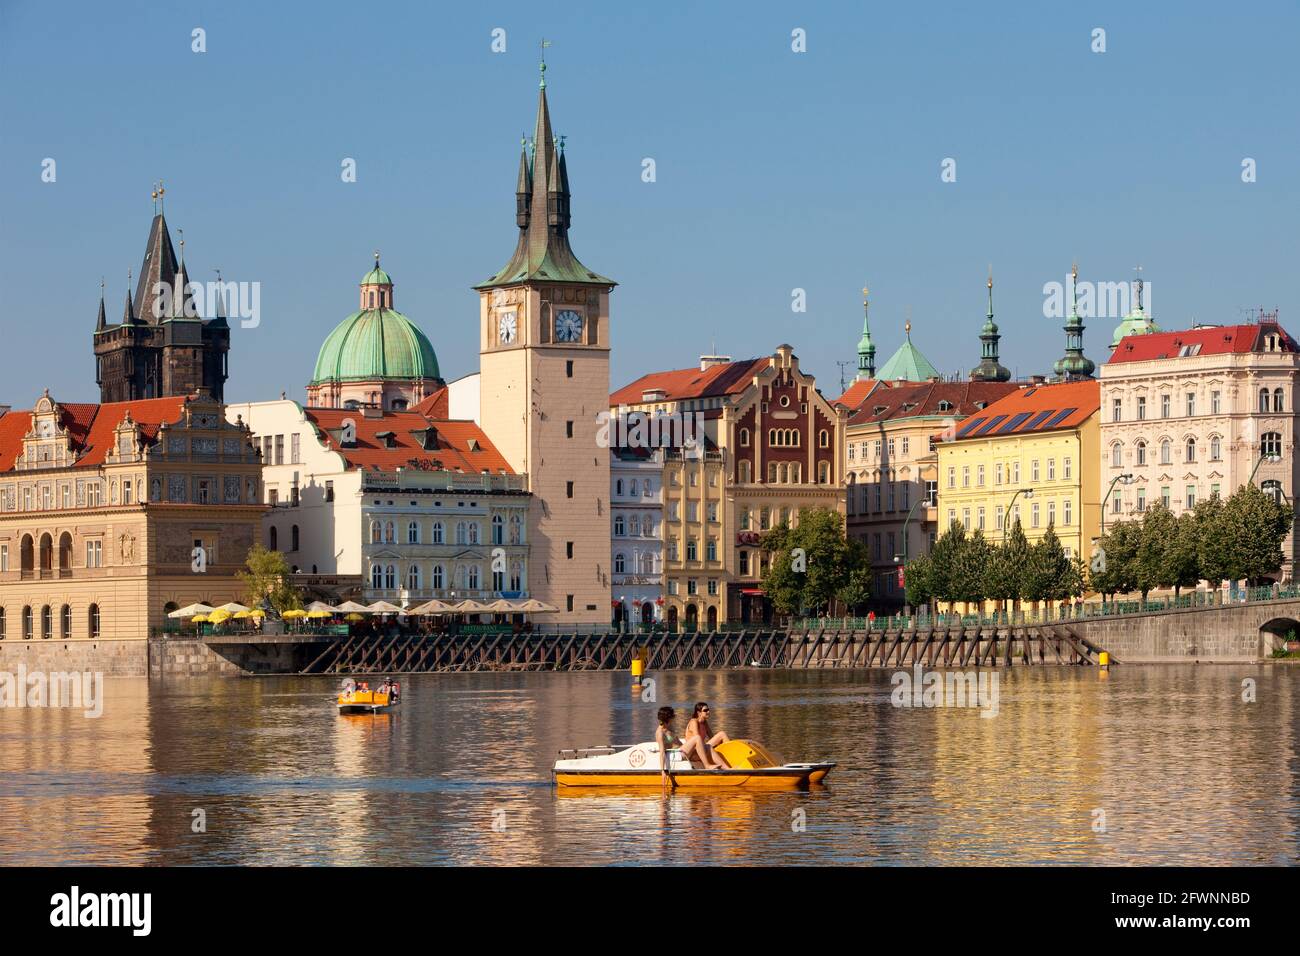 Praga - Novotneho Lavka, smetanovo museum, le torri della città vecchia e barche Foto Stock